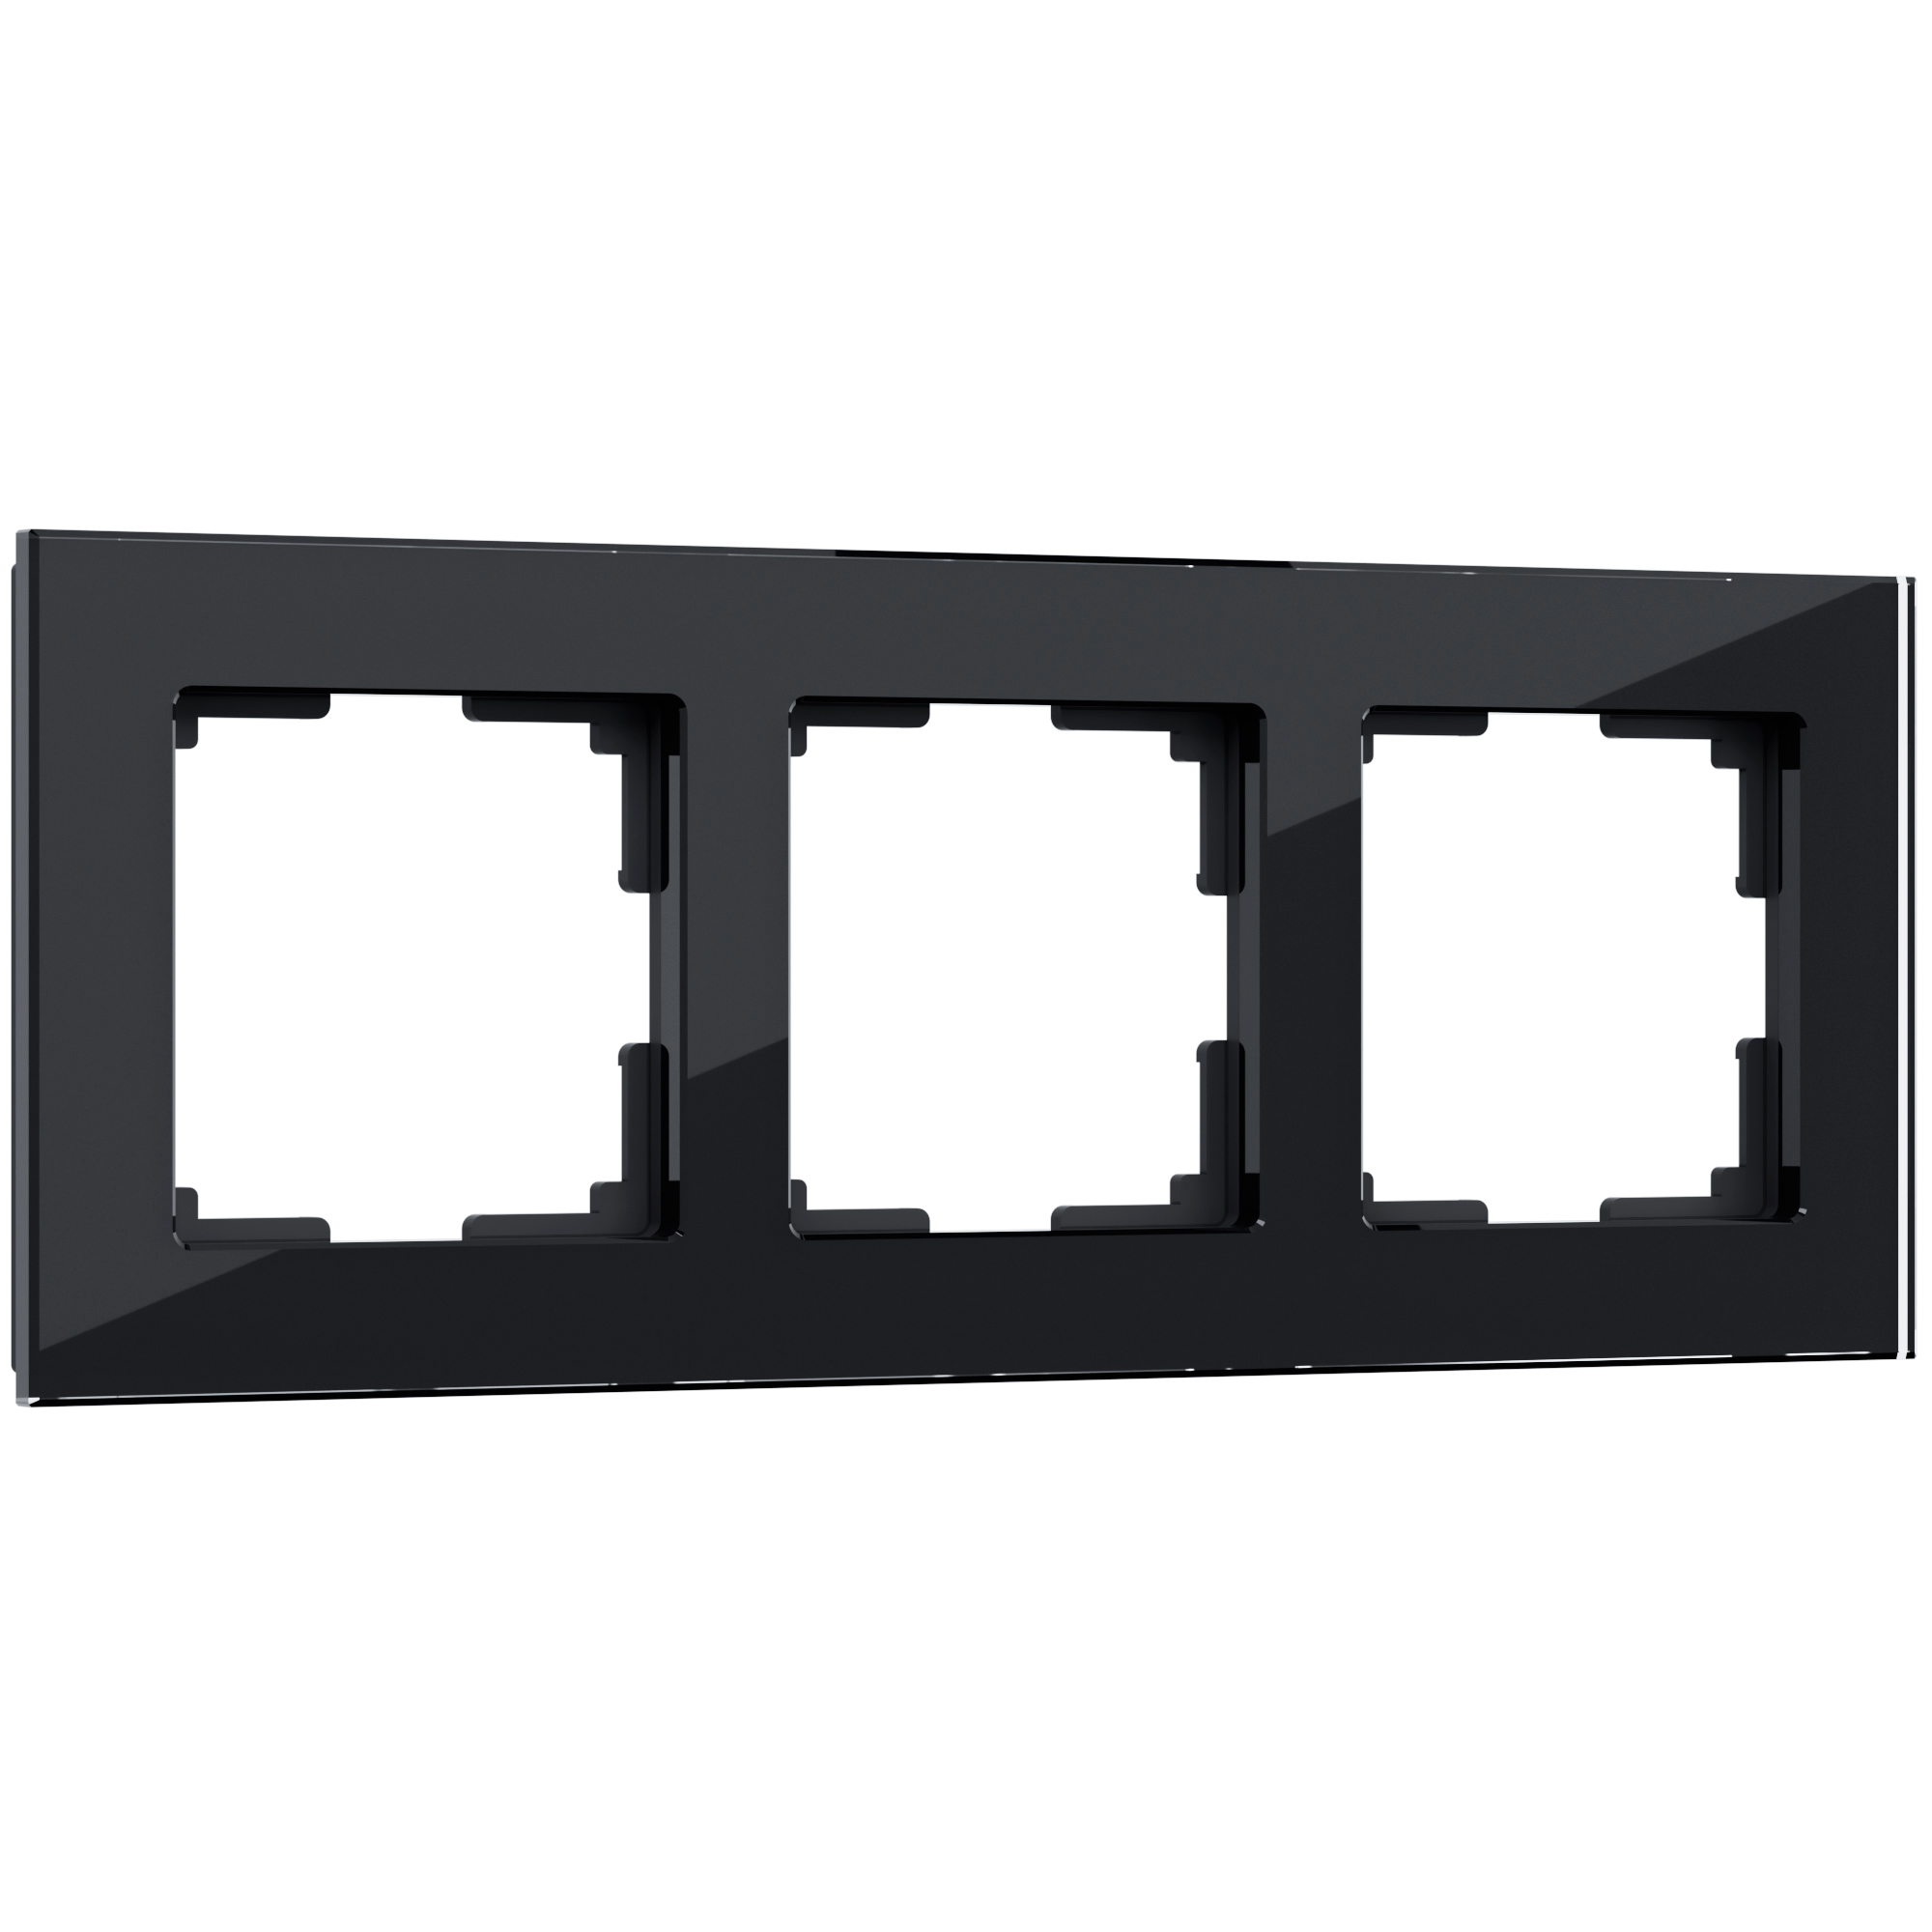 Рамка для розетки / выключателяна 3 поста Werkel  W0031108 Favorit черный стекло рамка на 3 поста werkel favorit w0031111 4690389159794